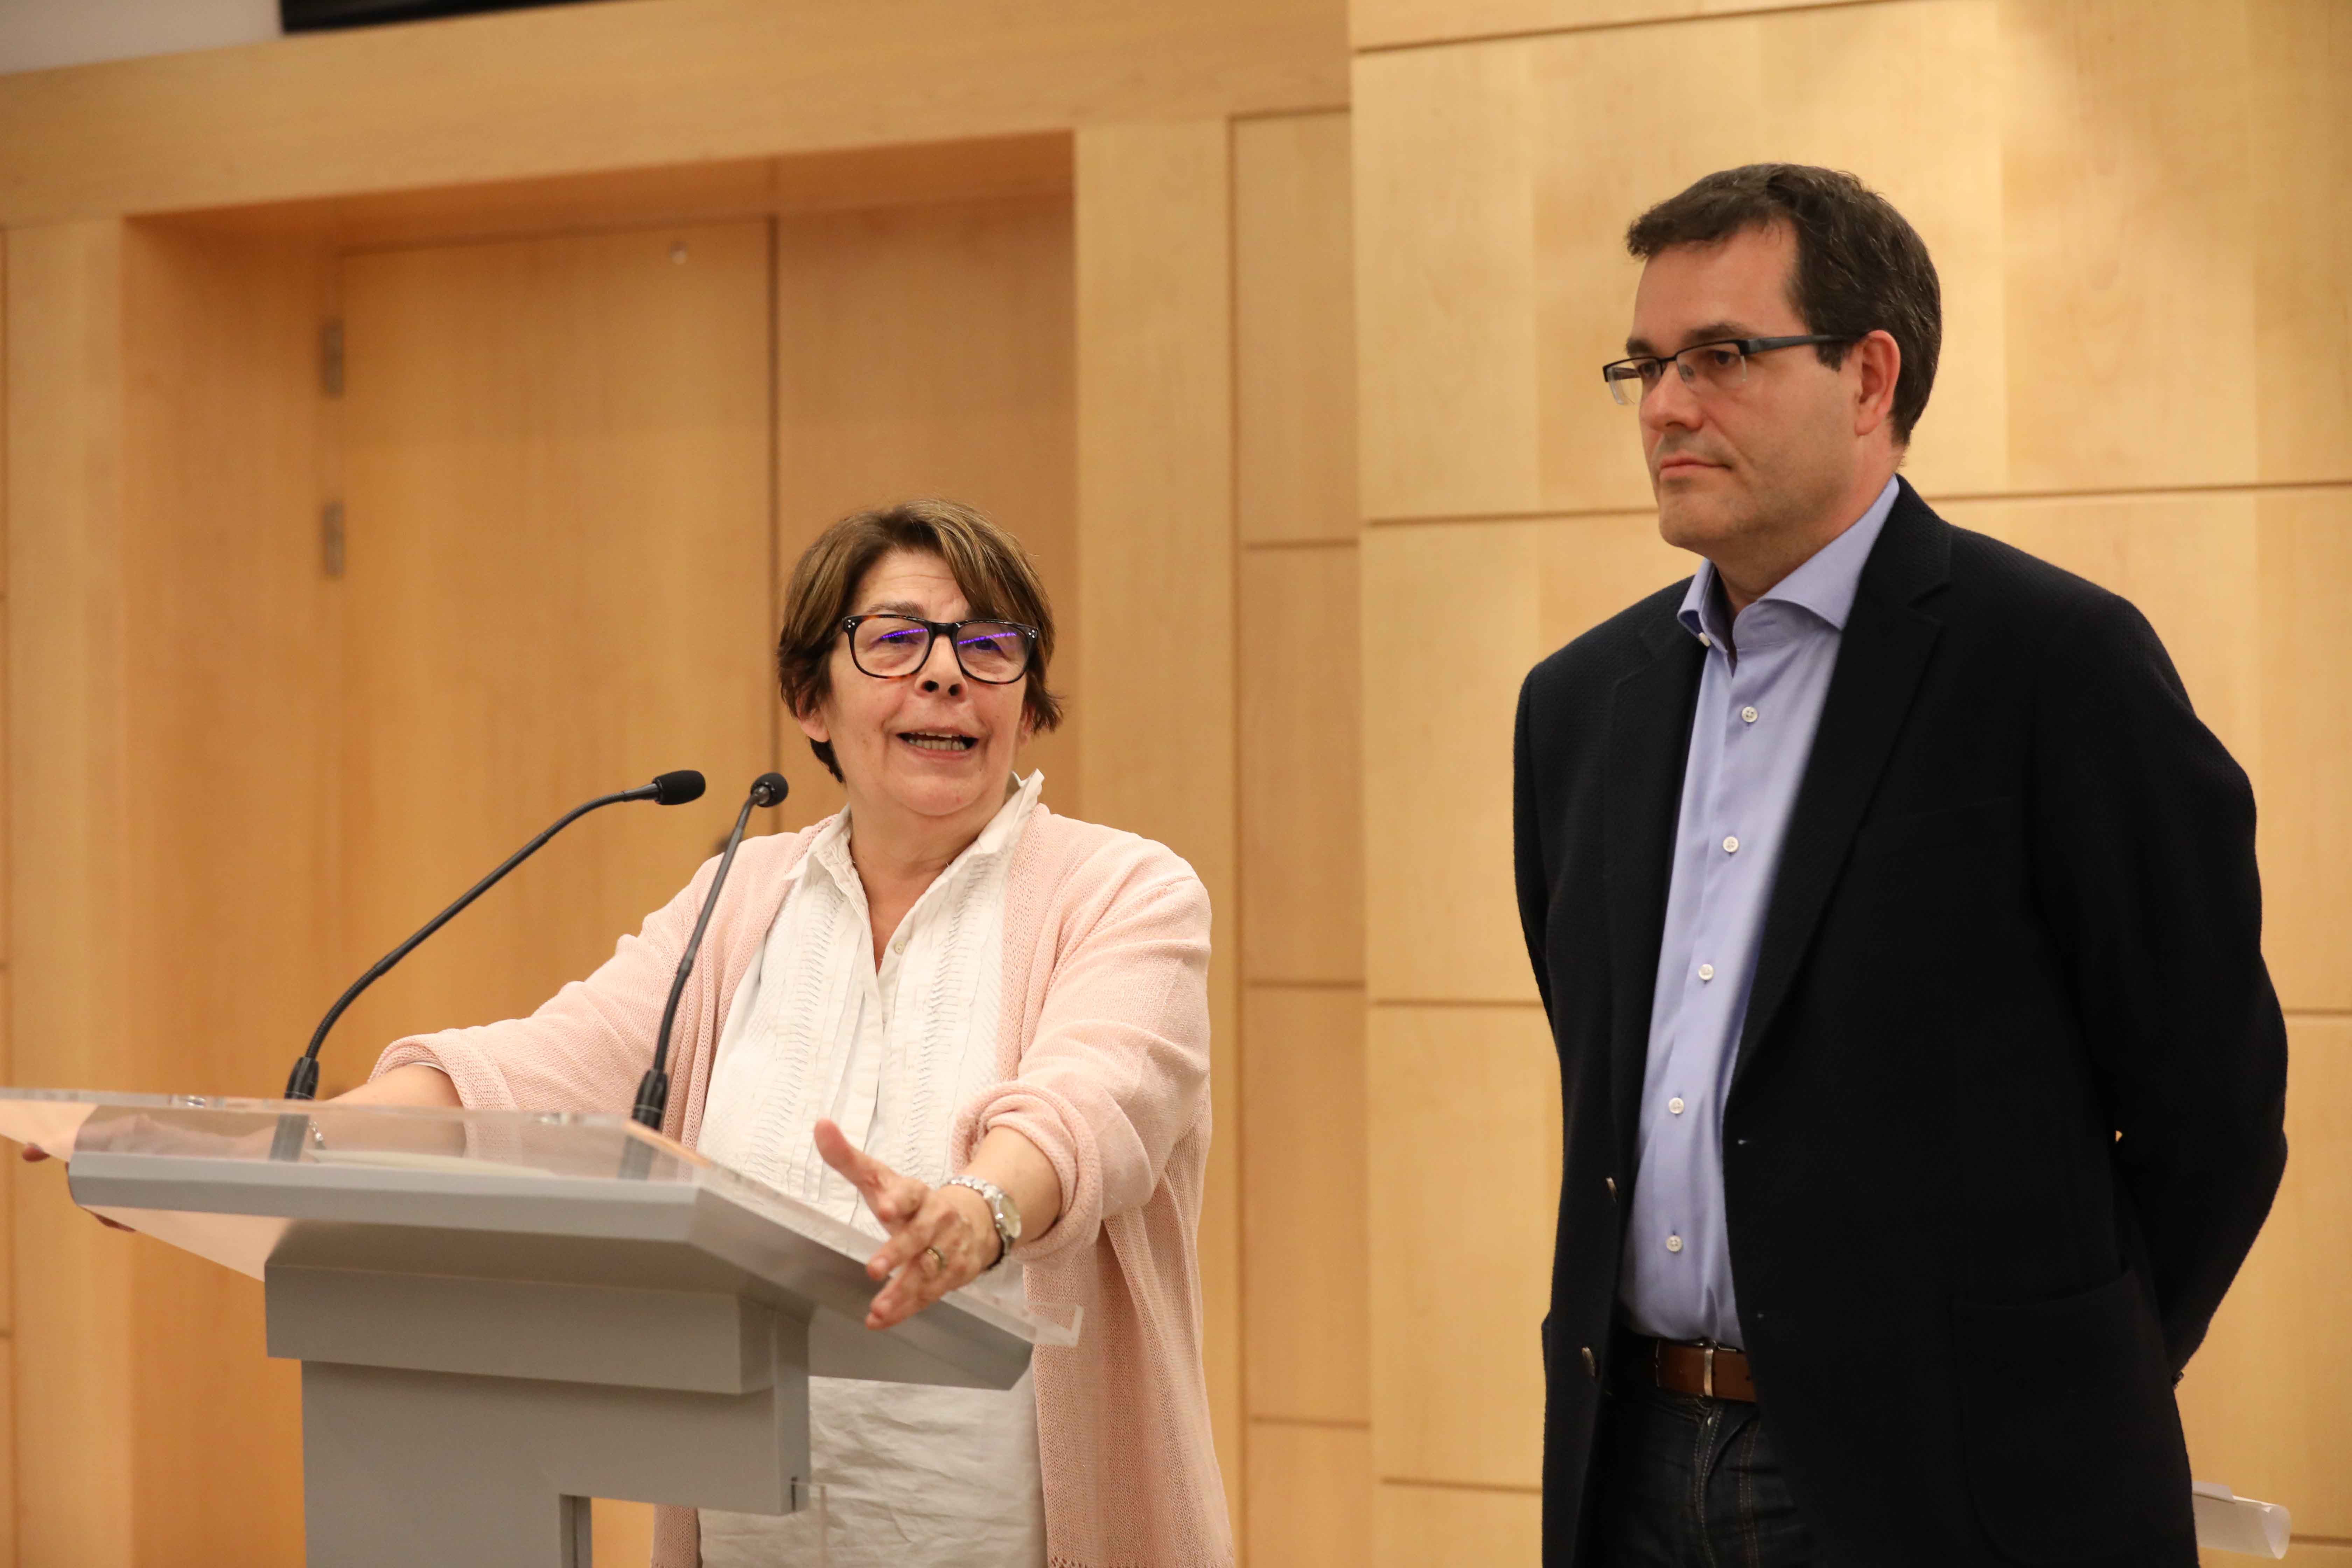 La delegada de Medio Ambiente y Movilidad, Inés Sabanés, y el concejal del PSOE, Chema Dávila, durante su comparecencia ante la prensa tras el encuentro mantenido hoy